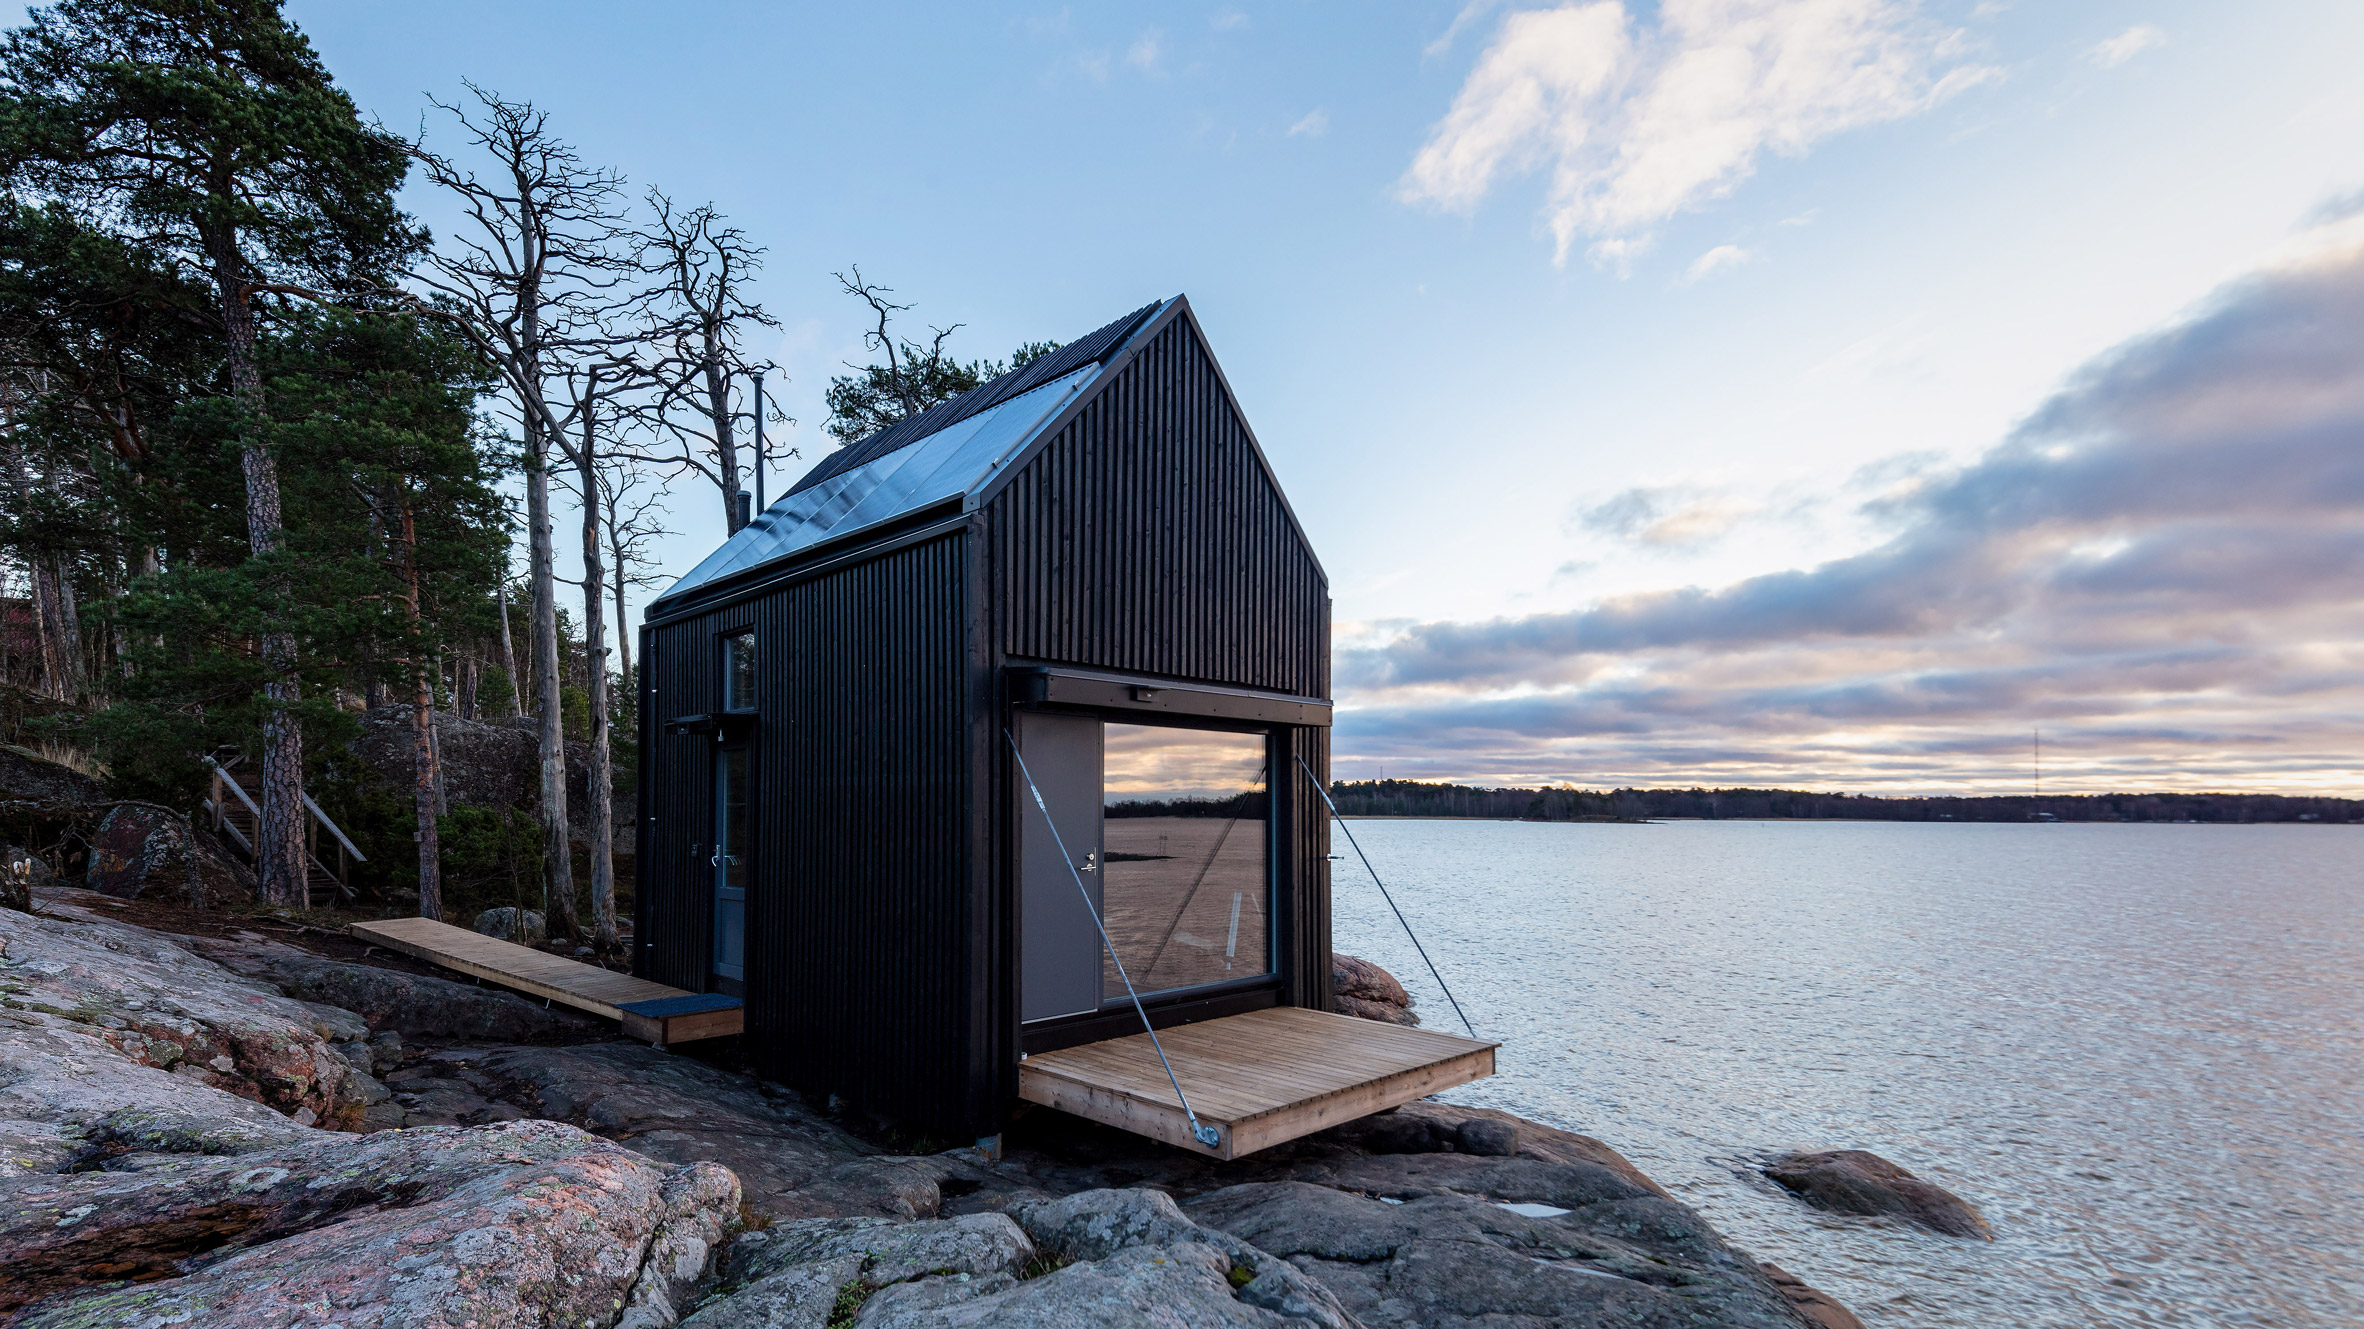 Majamaja is an off-grid seaside cabin near Helsinki